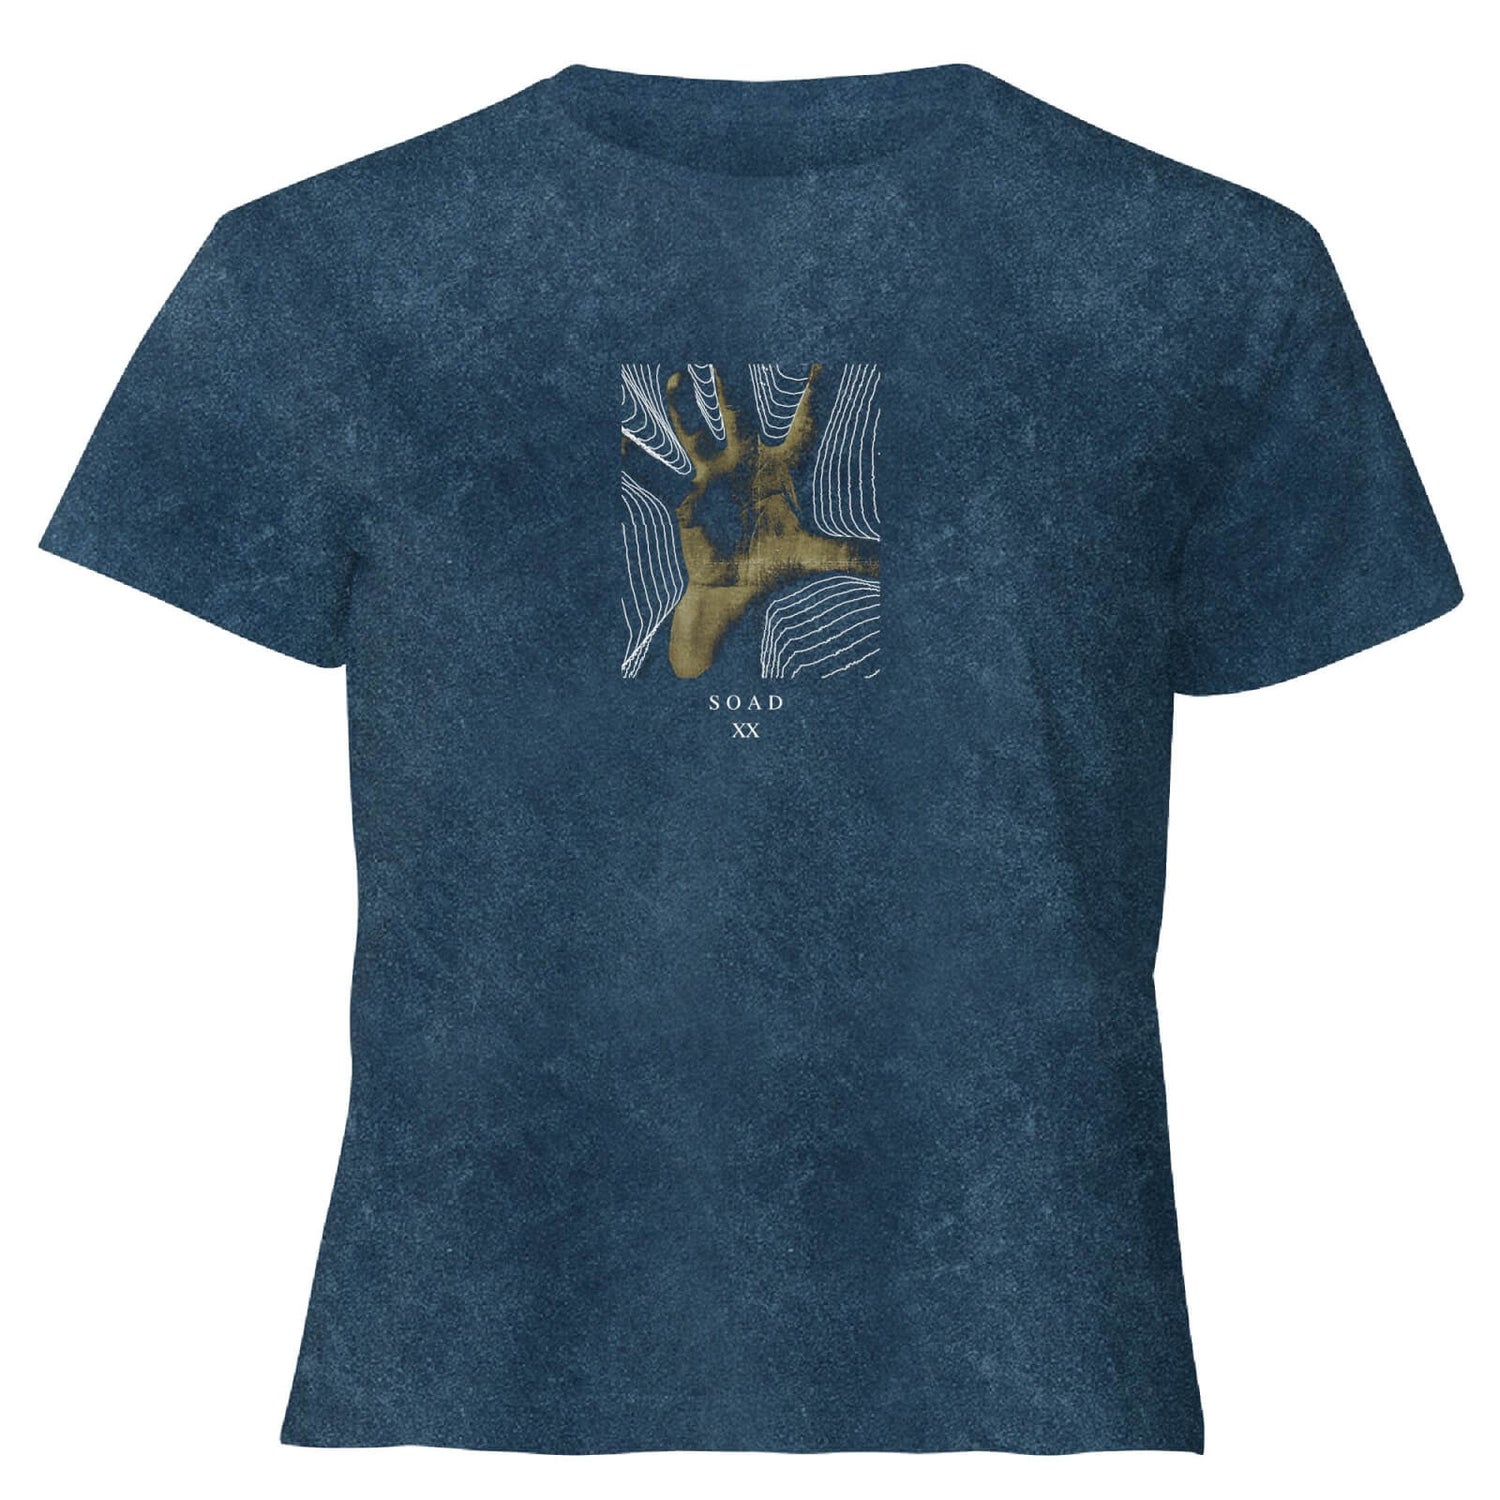 Camiseta corta para mujer de System Of A Down Hand - Lavado ácido azul marino